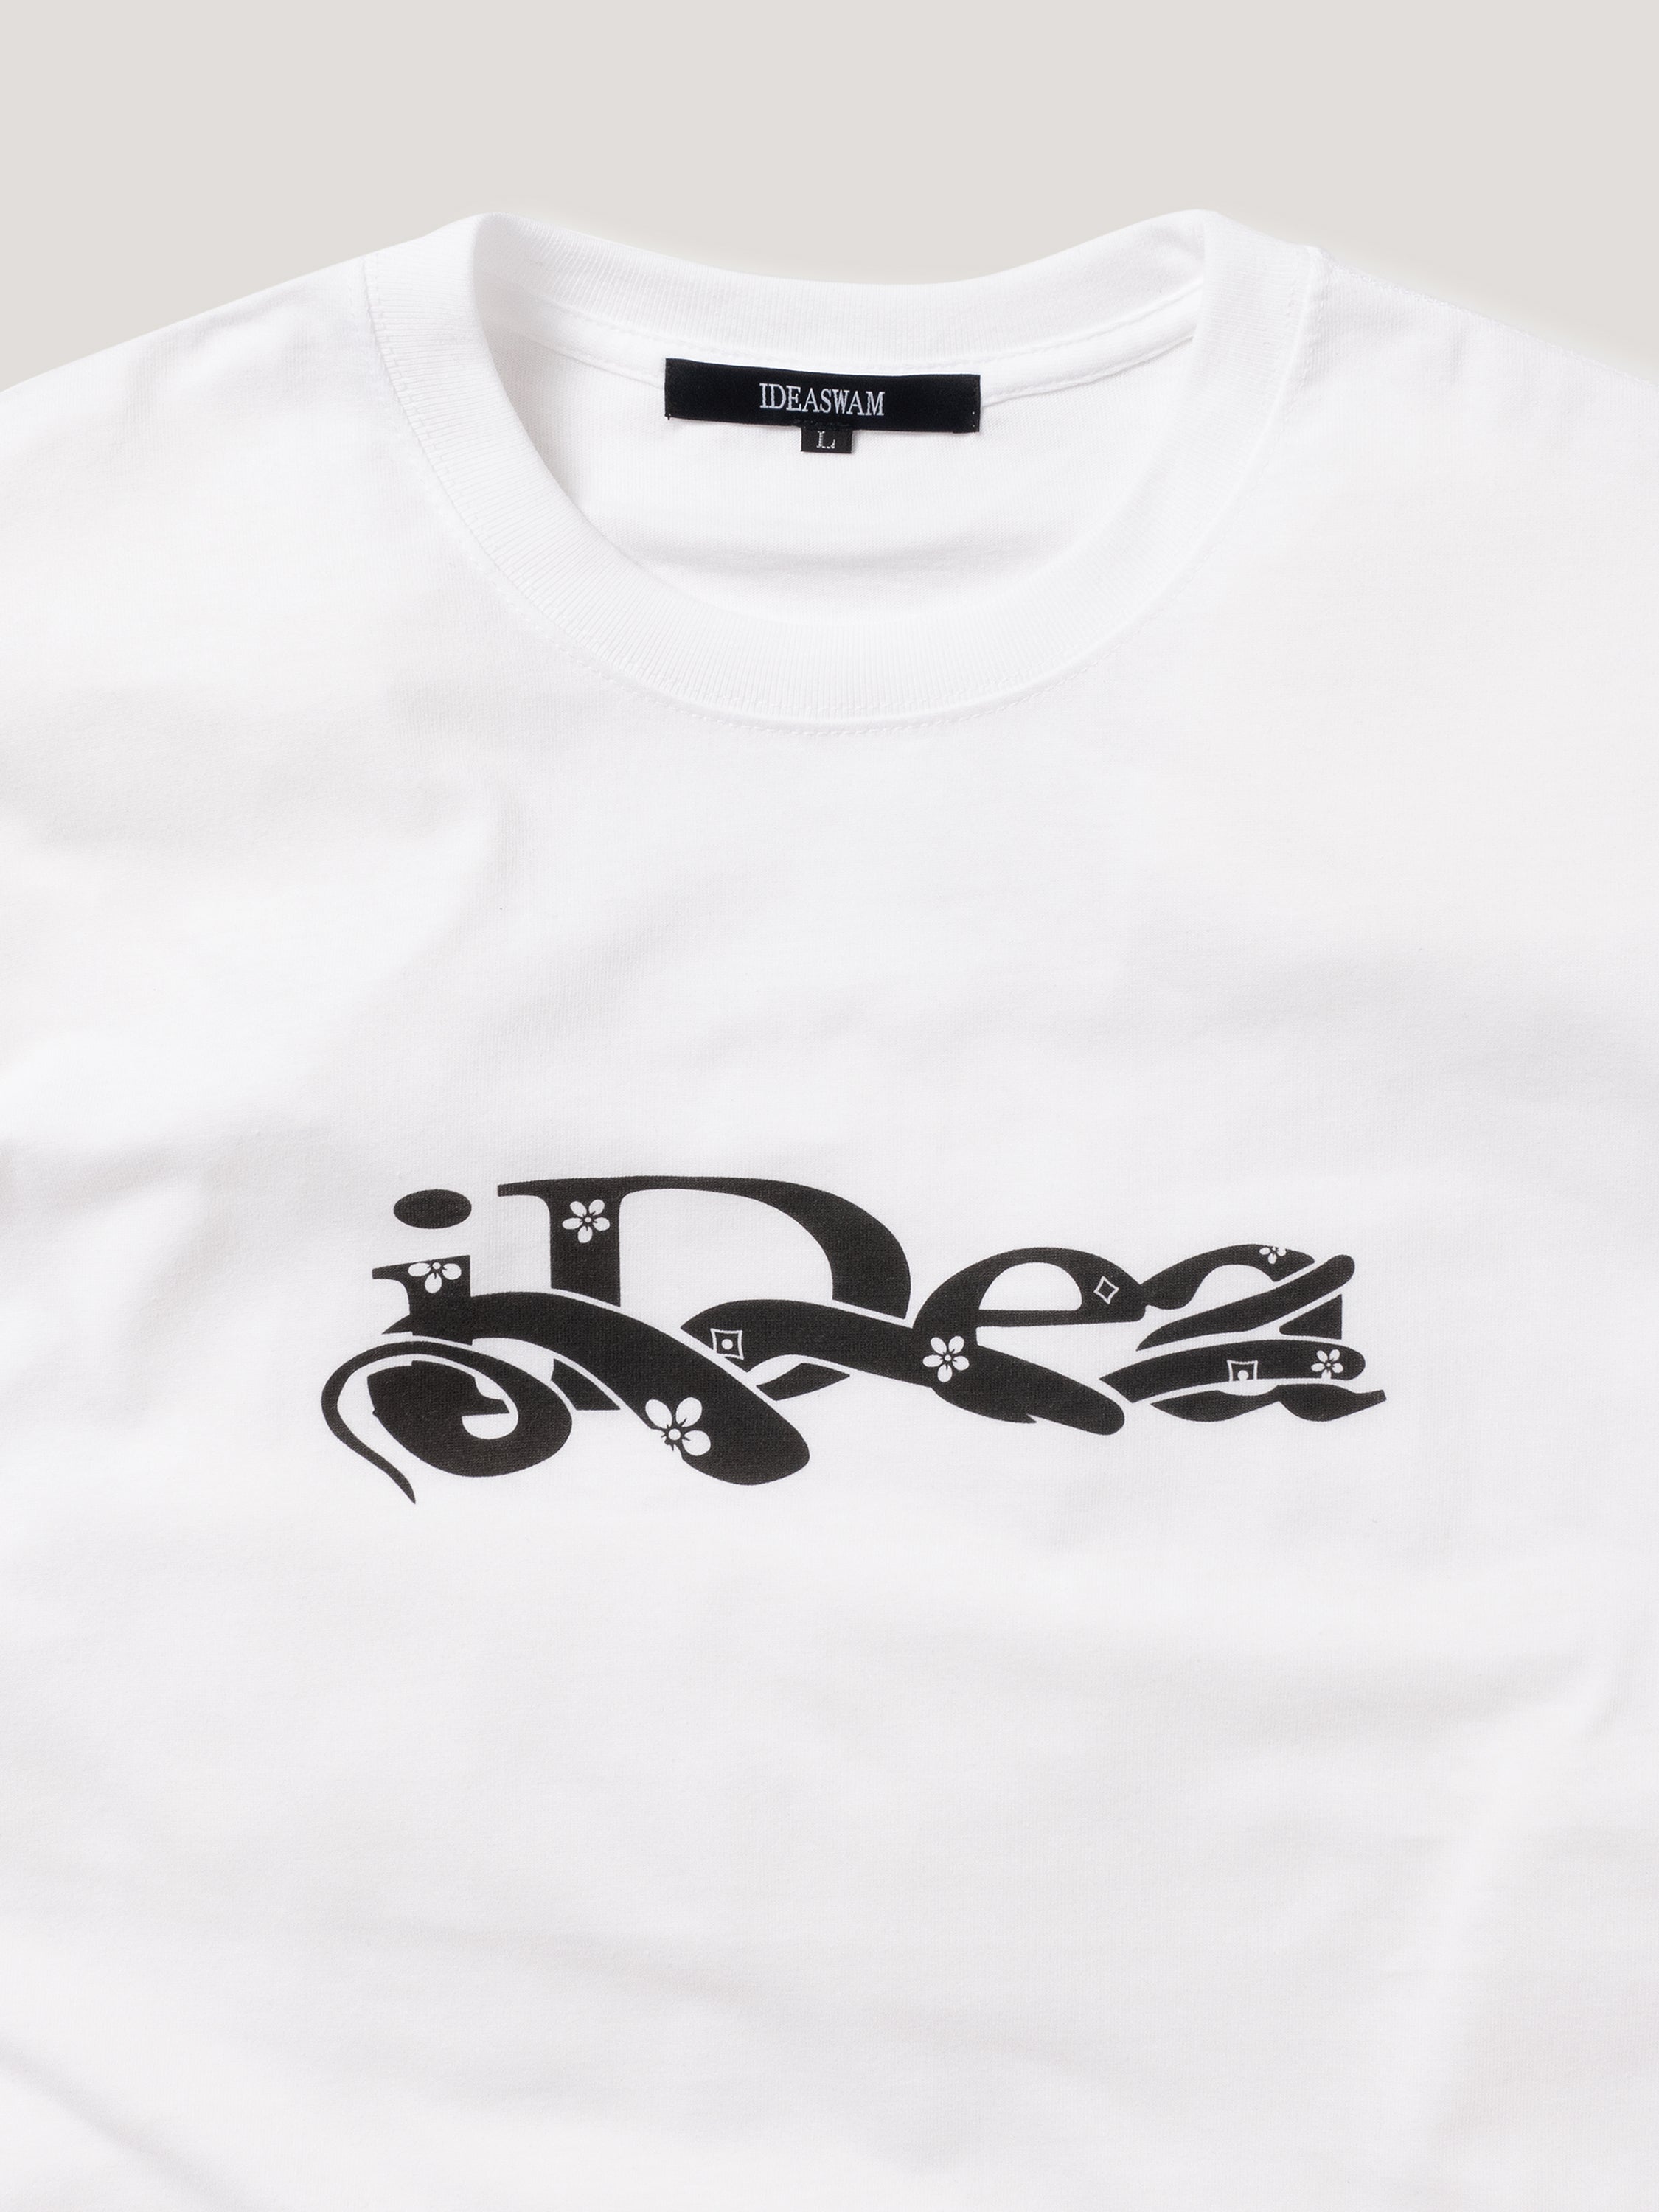 ideaswam tシャツ - Tシャツ/カットソー(半袖/袖なし)